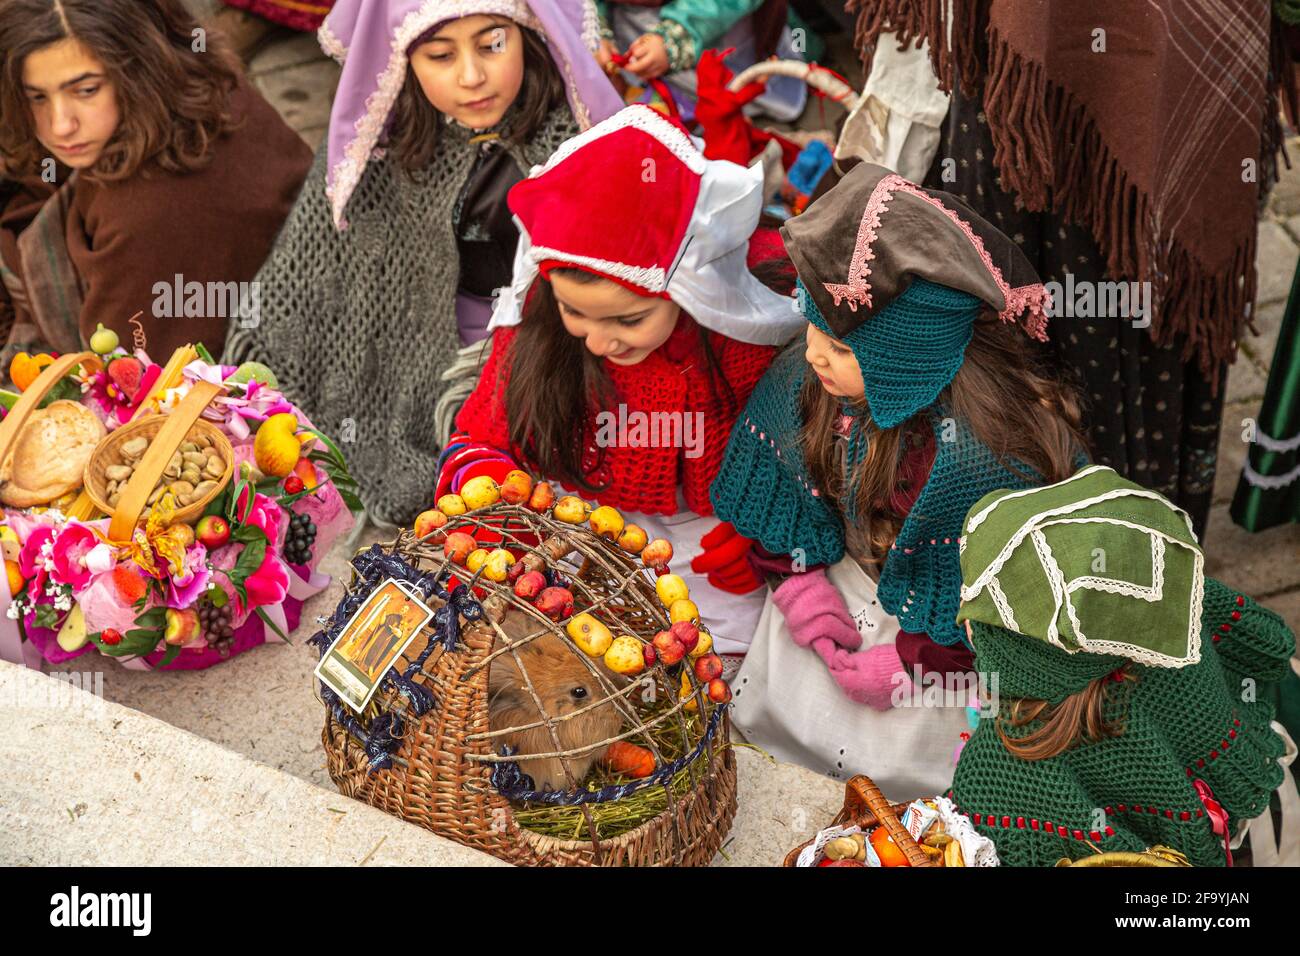 Folklore der Abruzzen. Kleine Mädchen in traditioneller Kleidung spielen mit den gesegneten Tieren anlässlich des Festes von Sant'Antonio Abate. Stockfoto